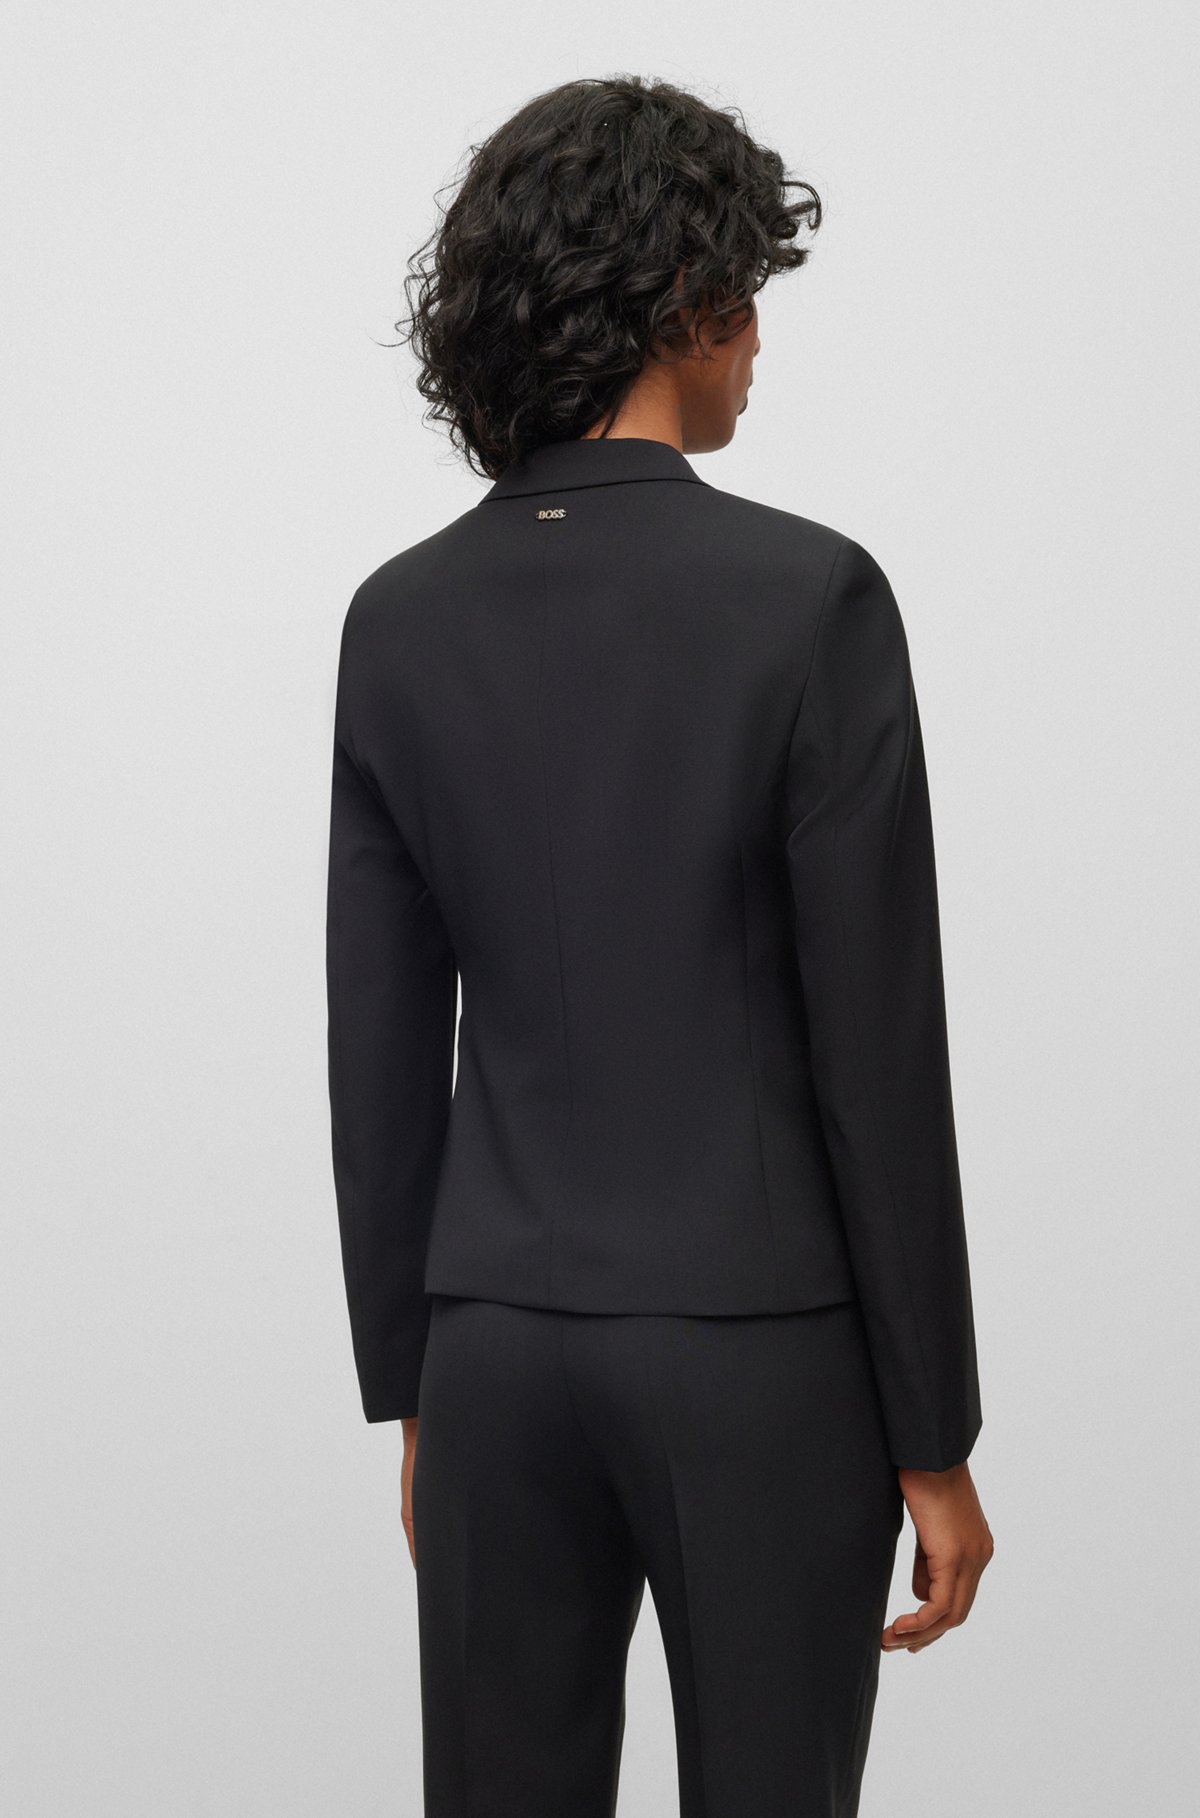 Regular-fit ip-up jacket in virgin wool, Black